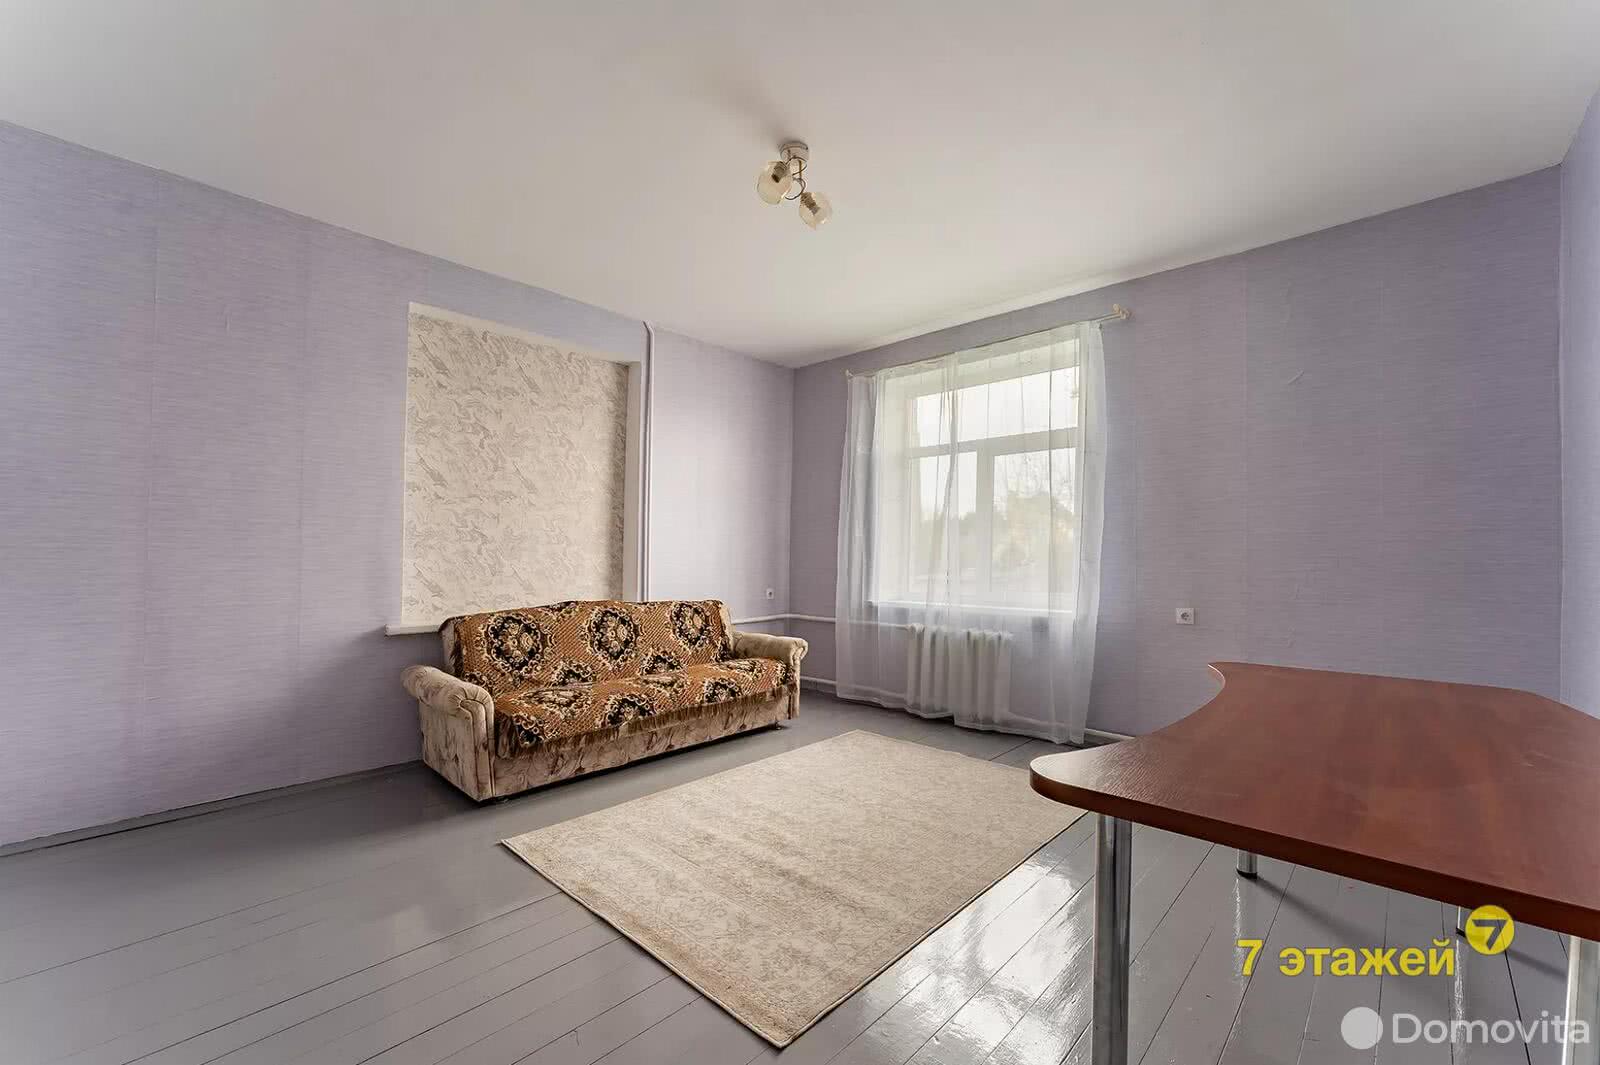 дом, Щомыслица, ул. Кирюникова, стоимость продажи 593 518 р.